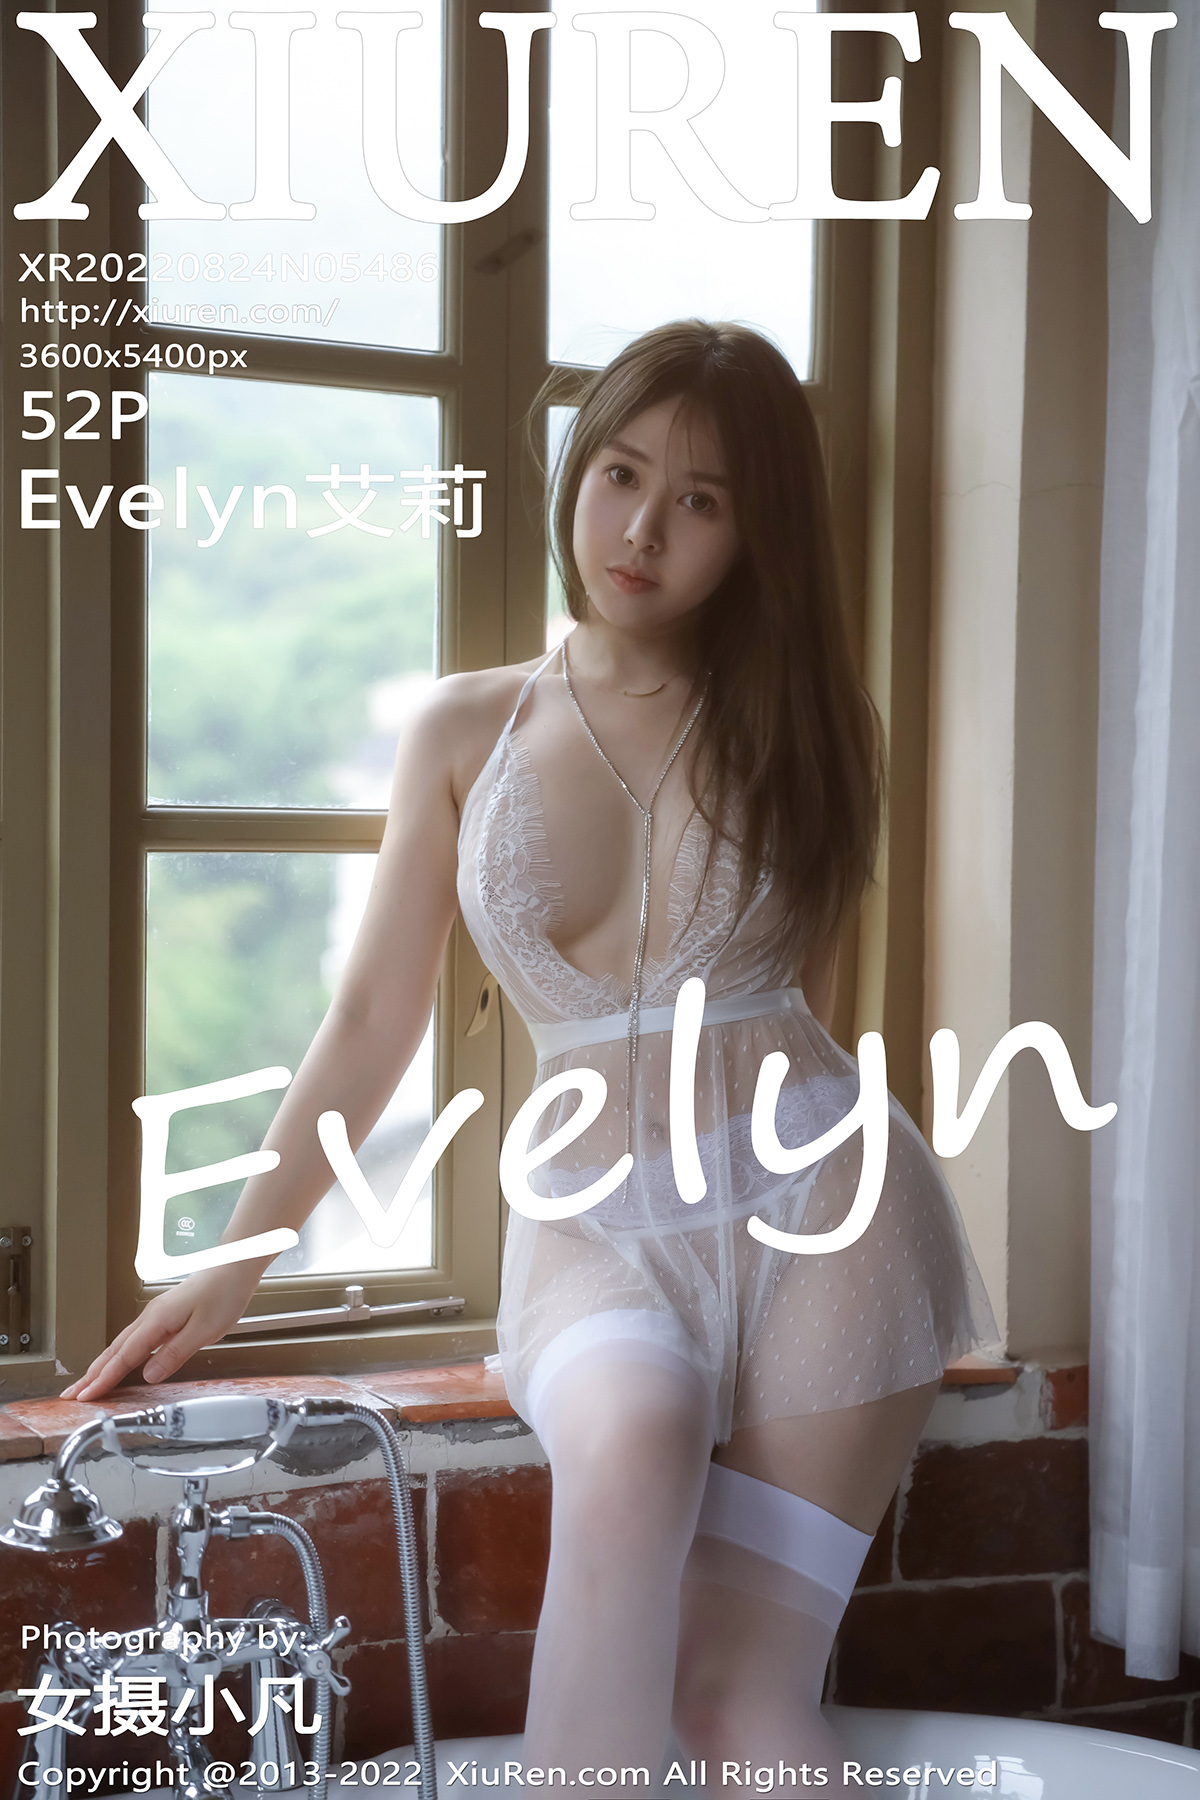 秀人 [XIUREN] 2022.08.24 Evelyn艾莉